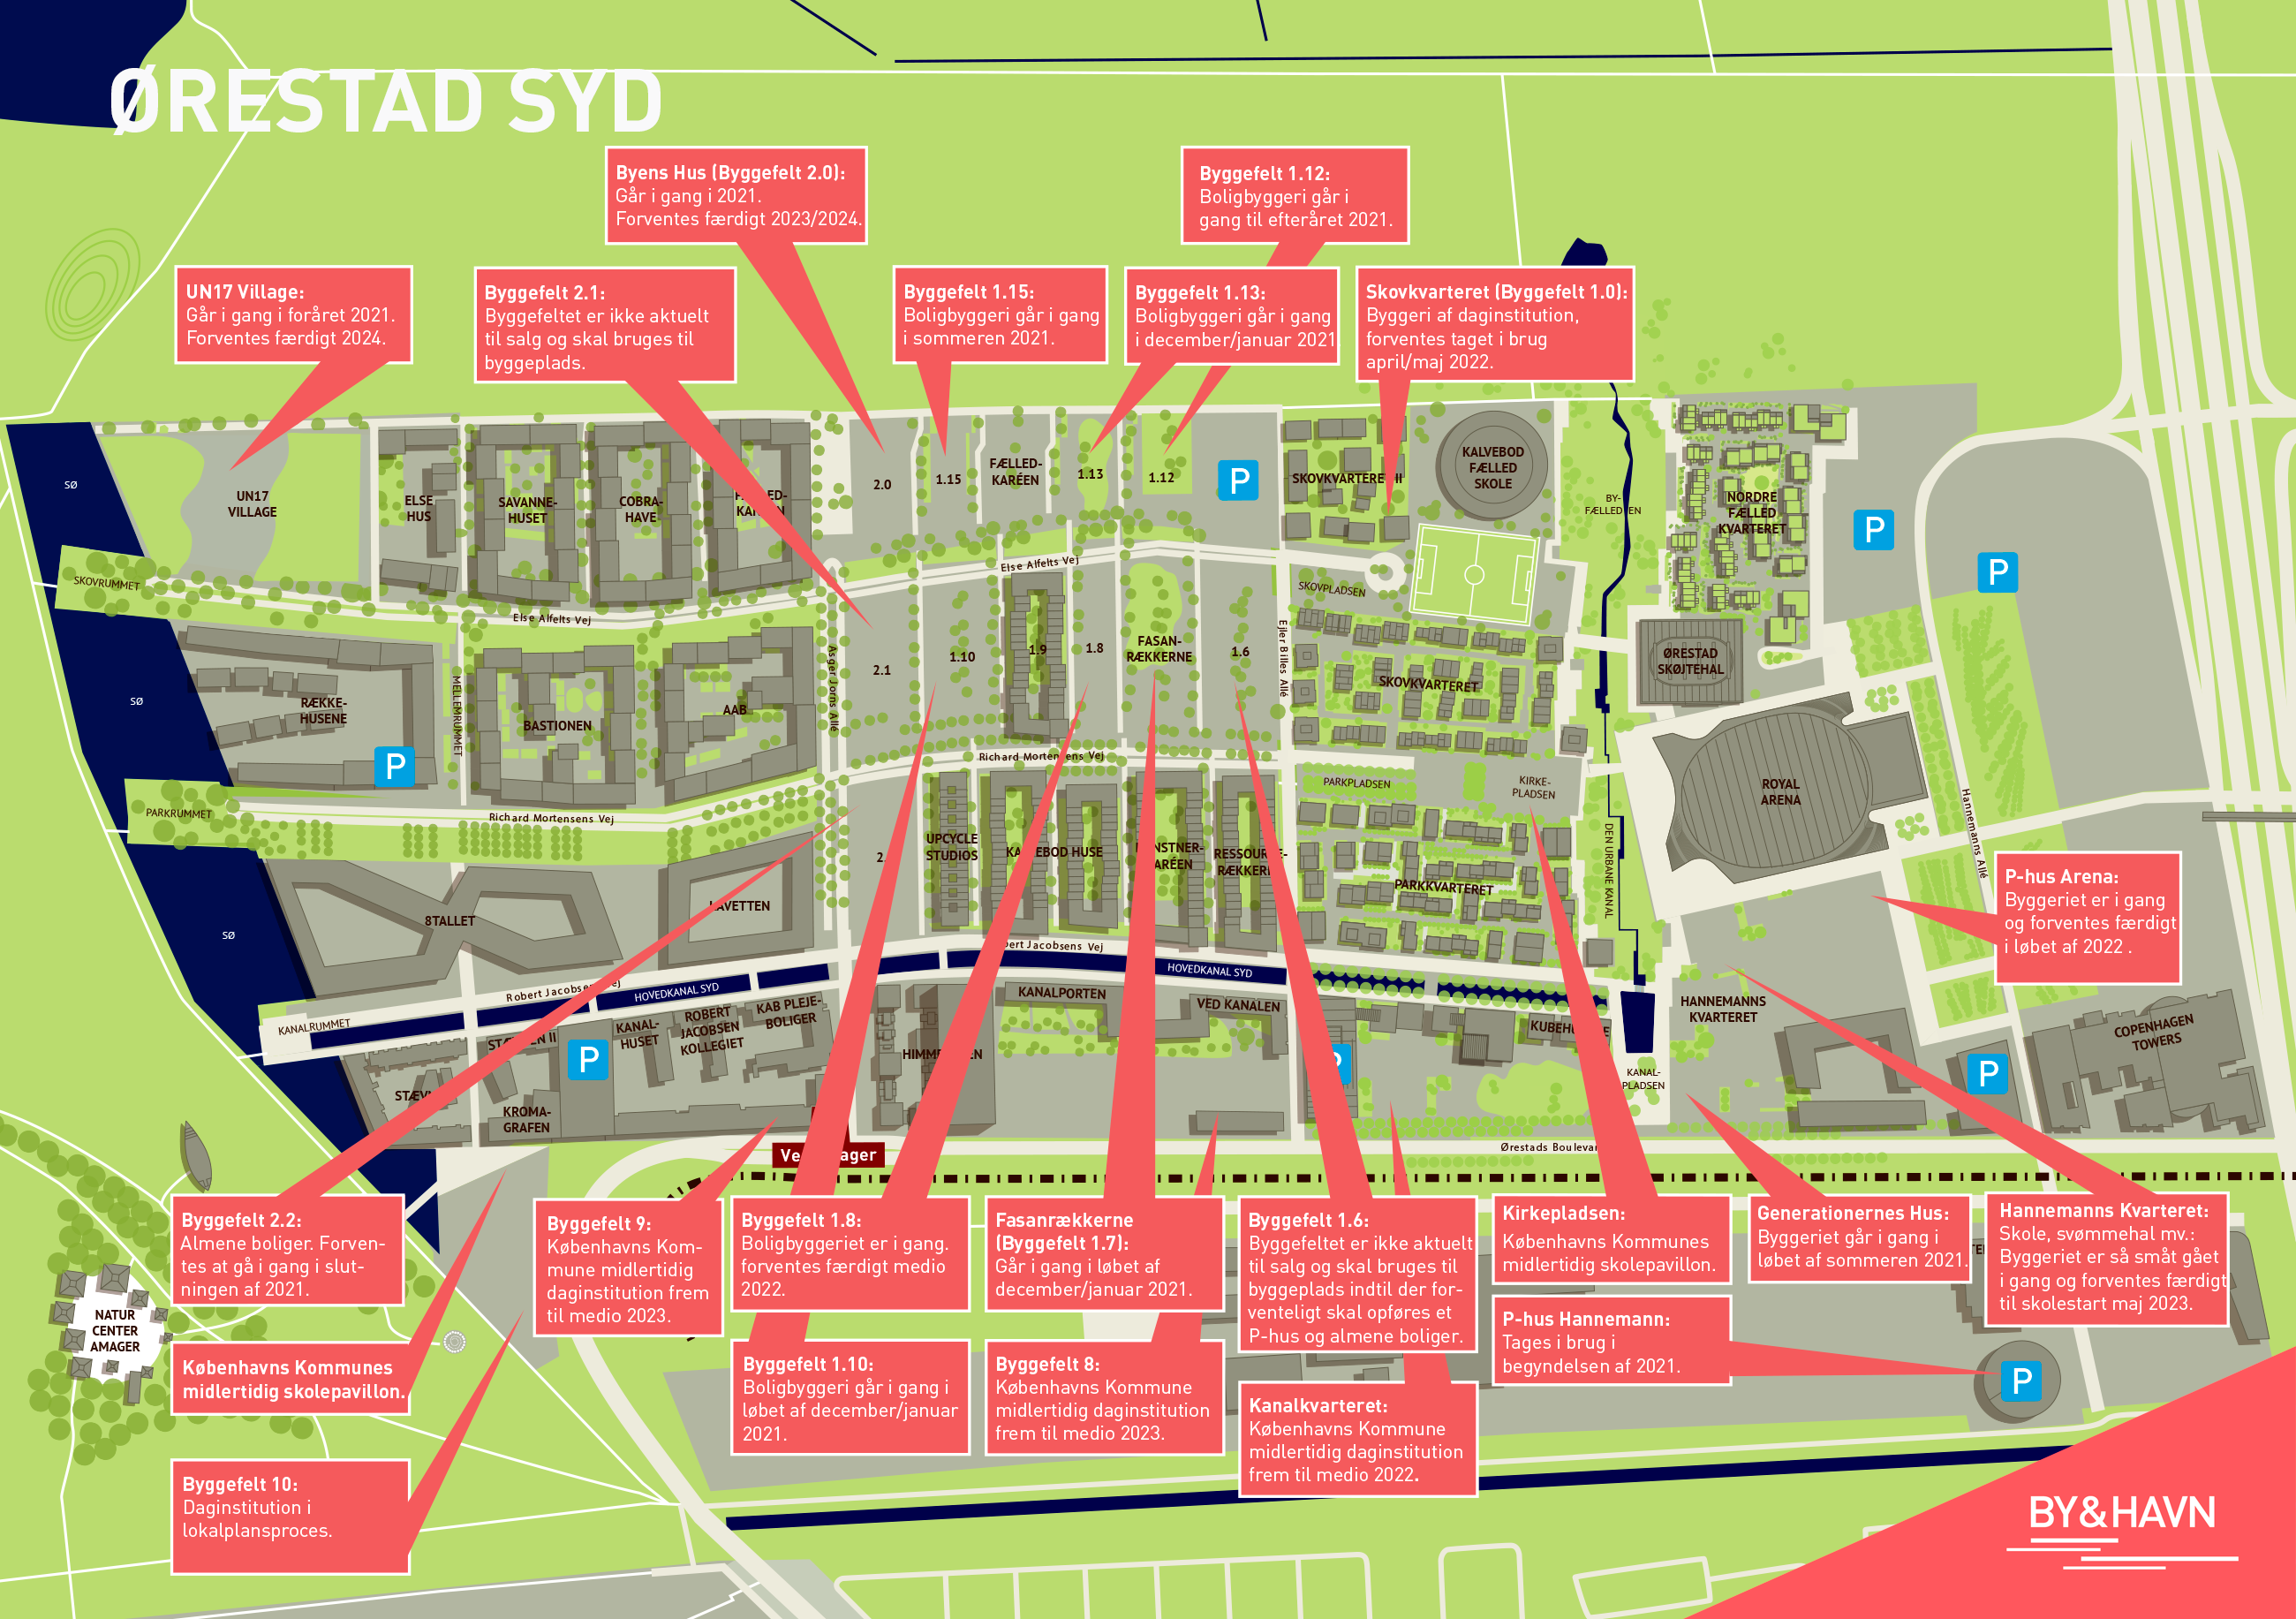 Kort over Ørestad Syd viser nuværende og fremtidig byggeaktivitet